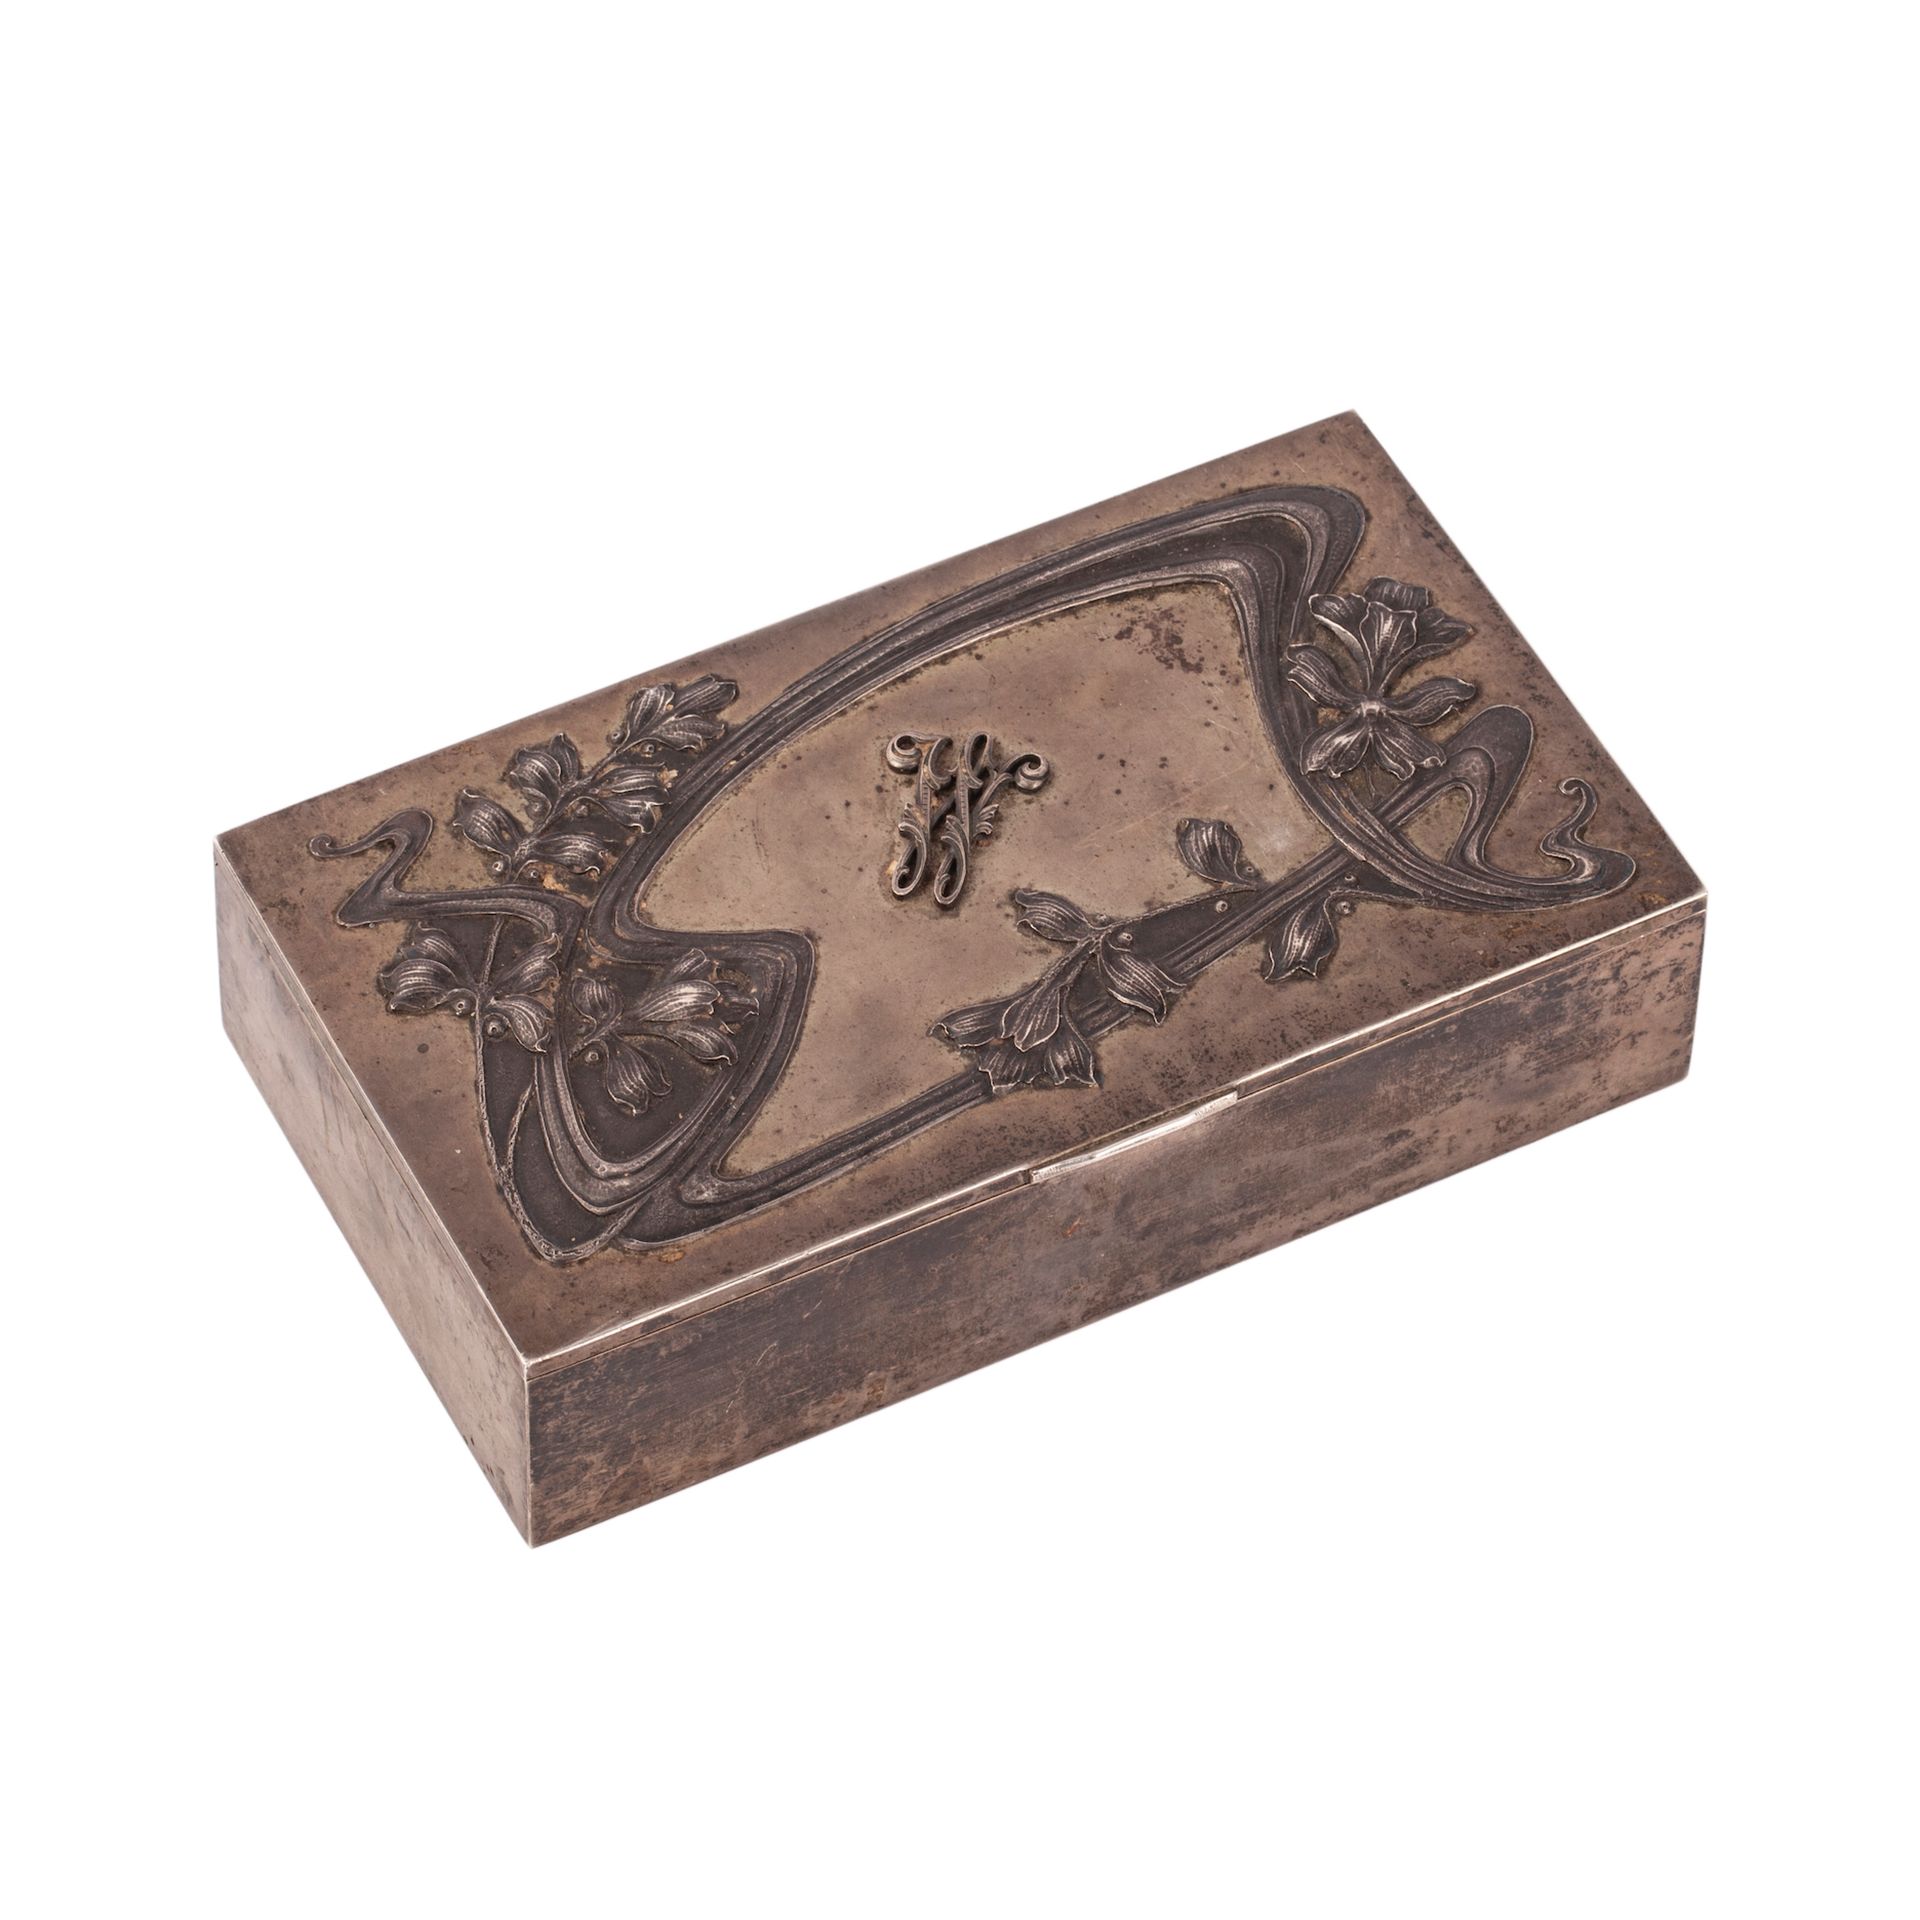 Null 新艺术主义风格的雪茄盒。银，铸造，压花，雕刻，镀金。莫斯科，1908-1917。尺寸：18.5 x 10.8 x 4.5厘米。重量：573.8克。